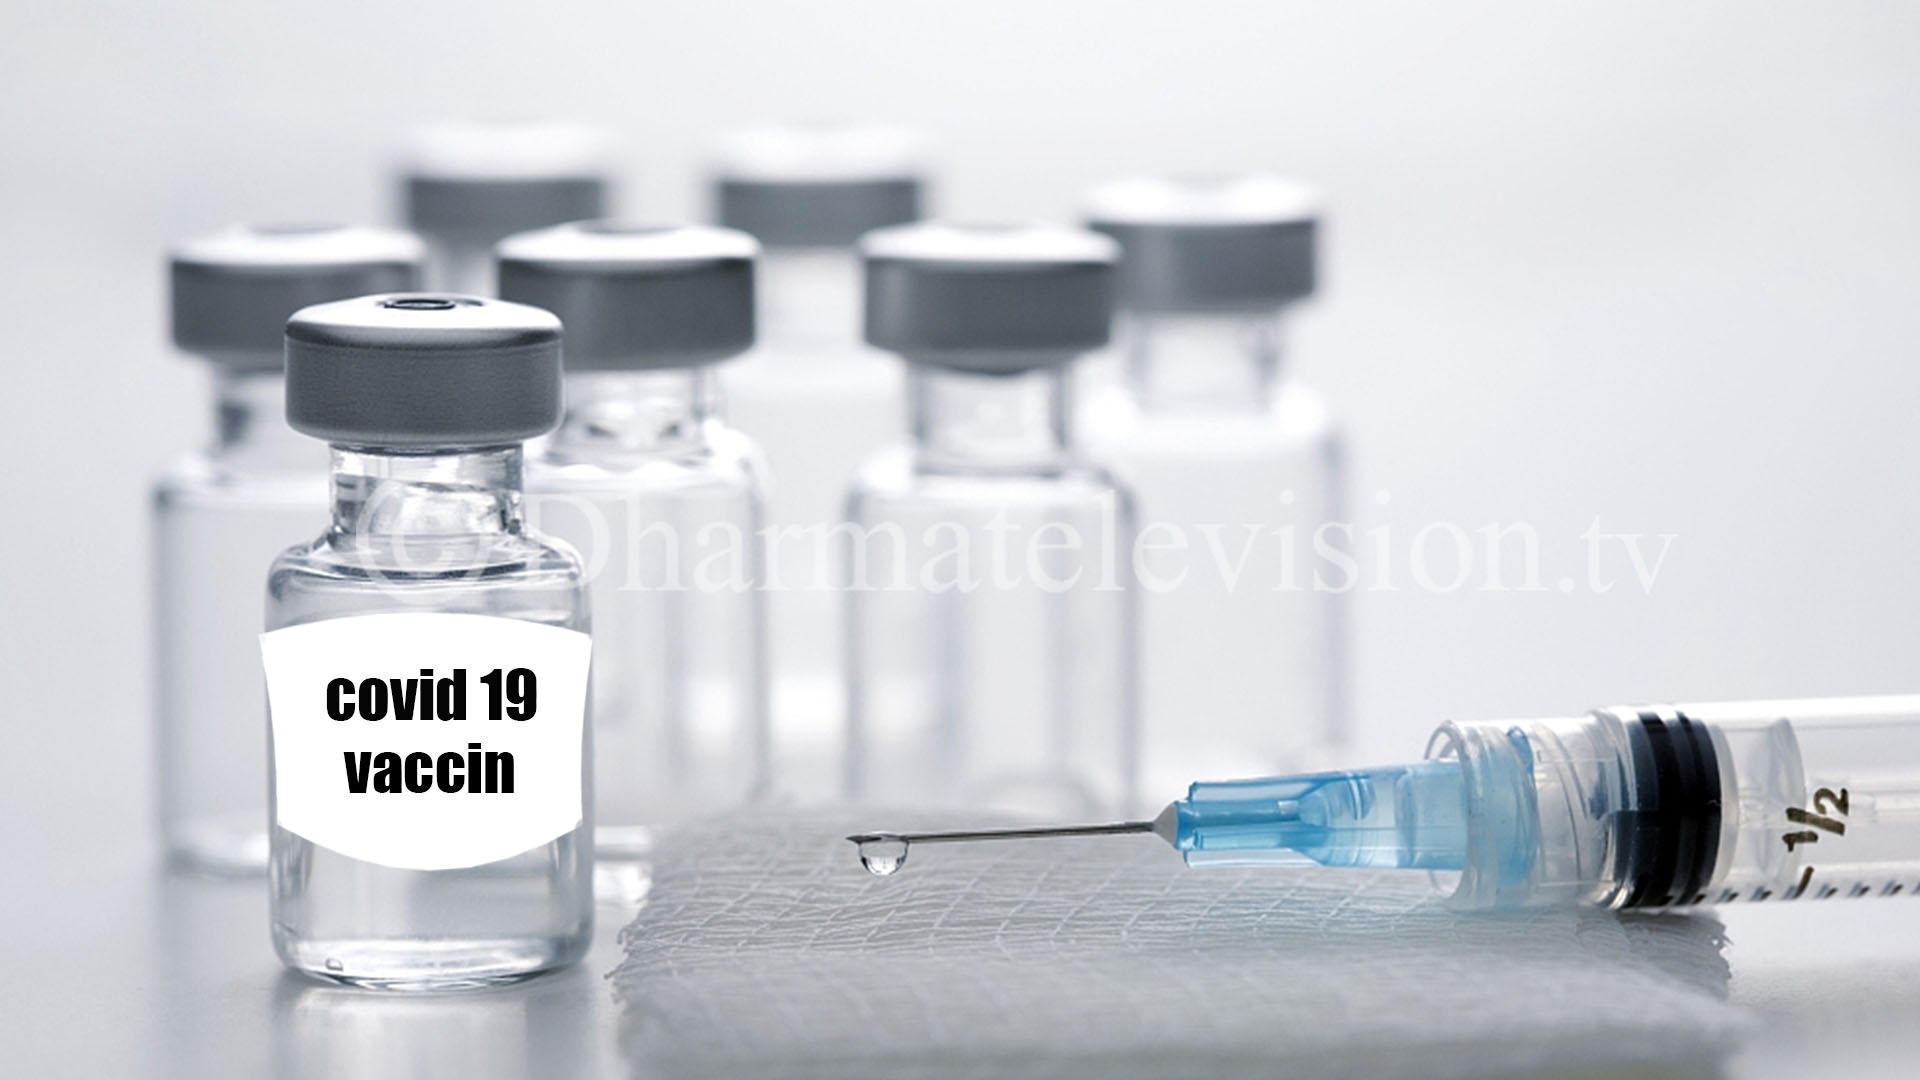 Human testing of new coronavirus vaccine begins in the UK